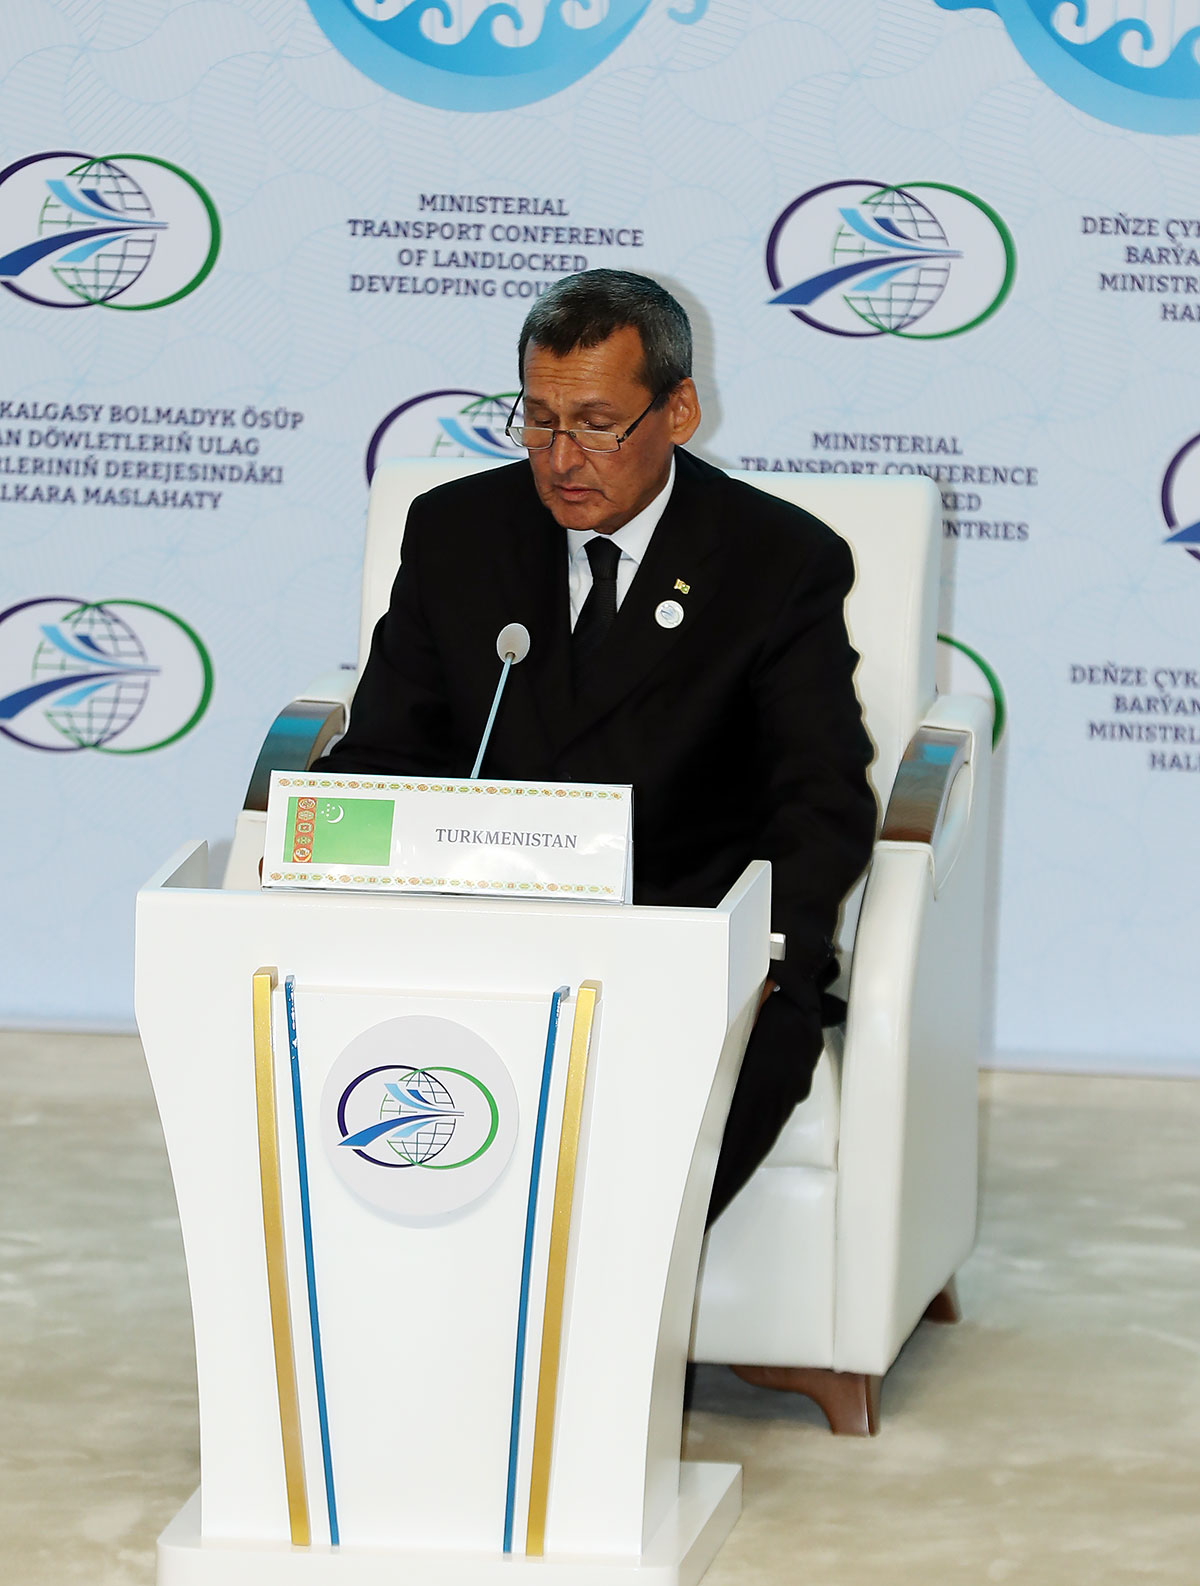 В Туркменистане организована Конференция министров транспорта развивающихся стран, не имеющих выхода к морю